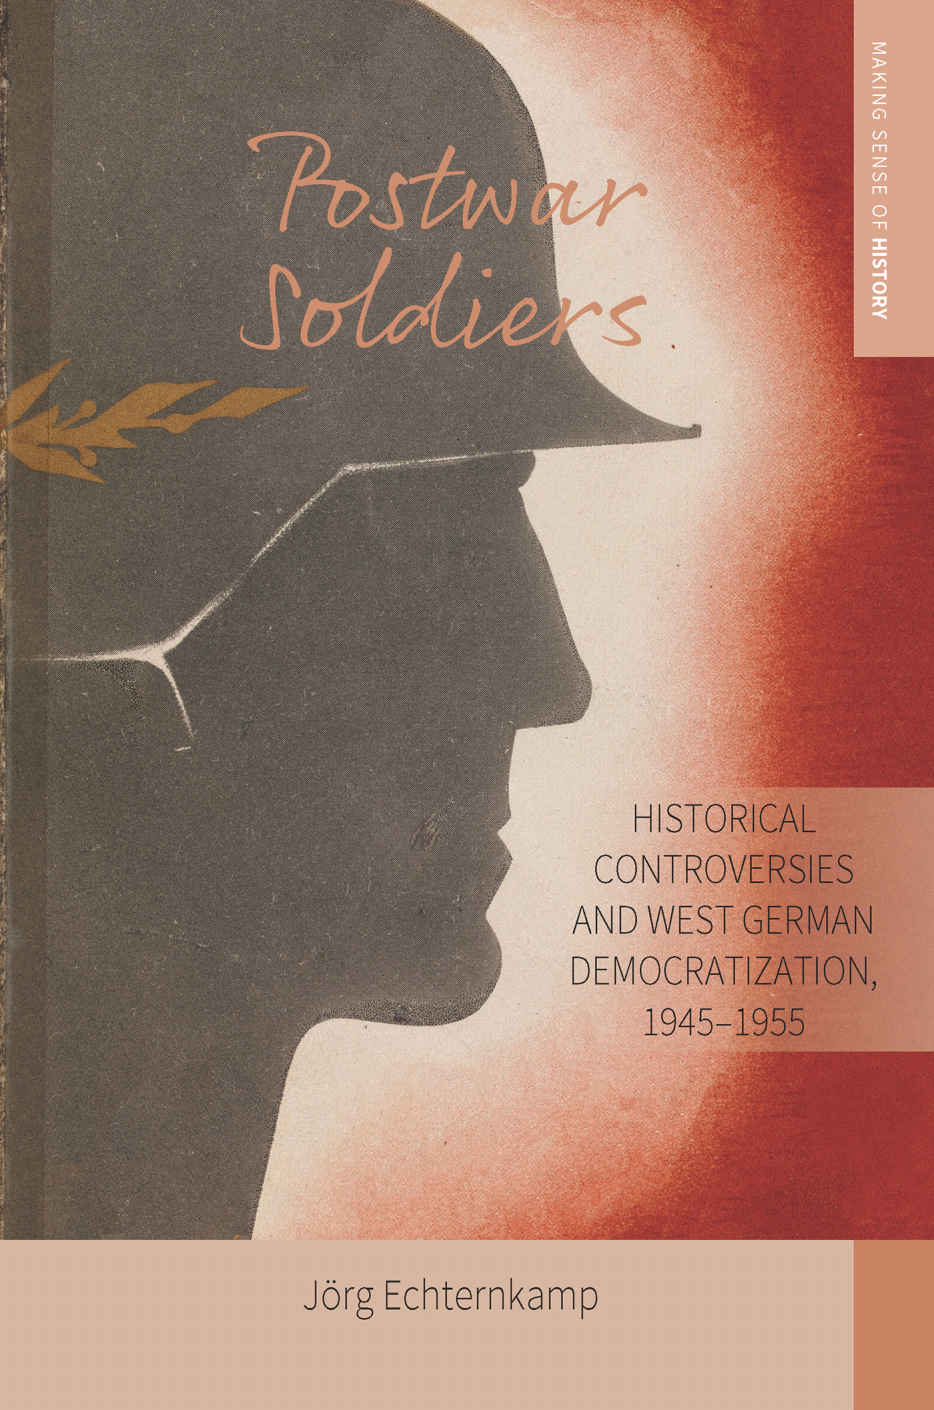 Buchcover Postwar Soldier von Jörg Echternkamp